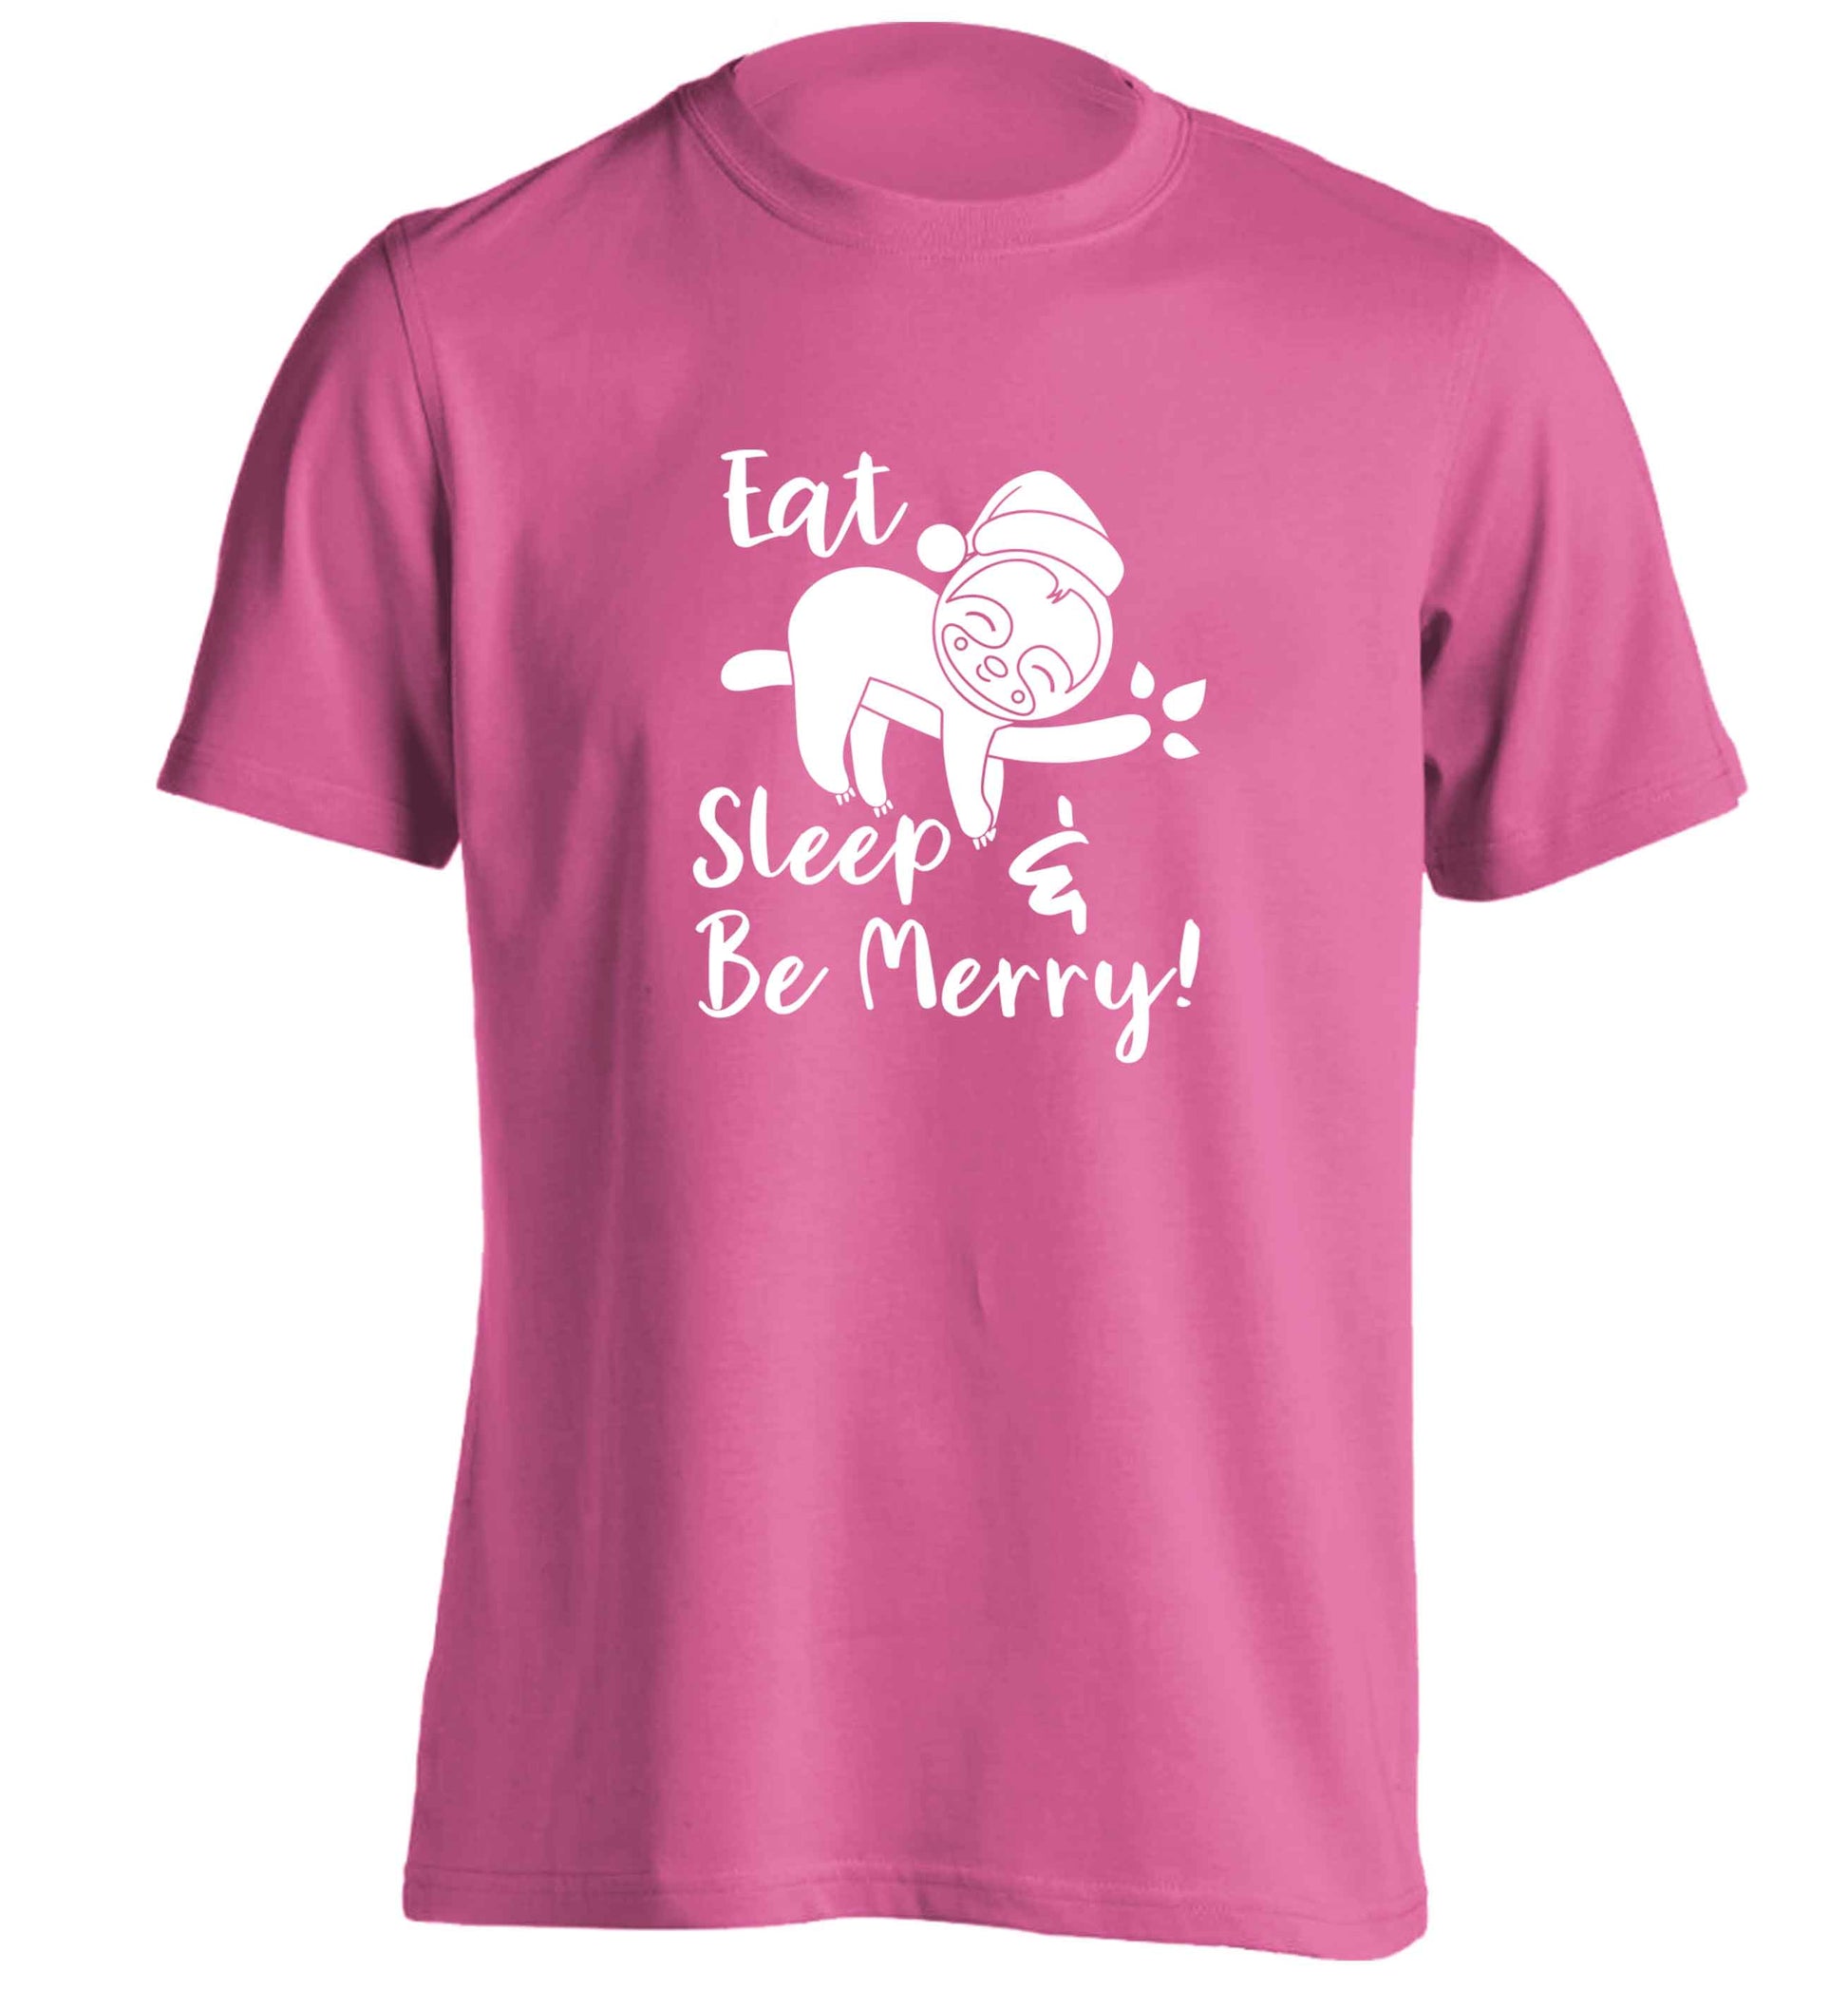 Merry Slothmas adults unisex pink Tshirt 2XL